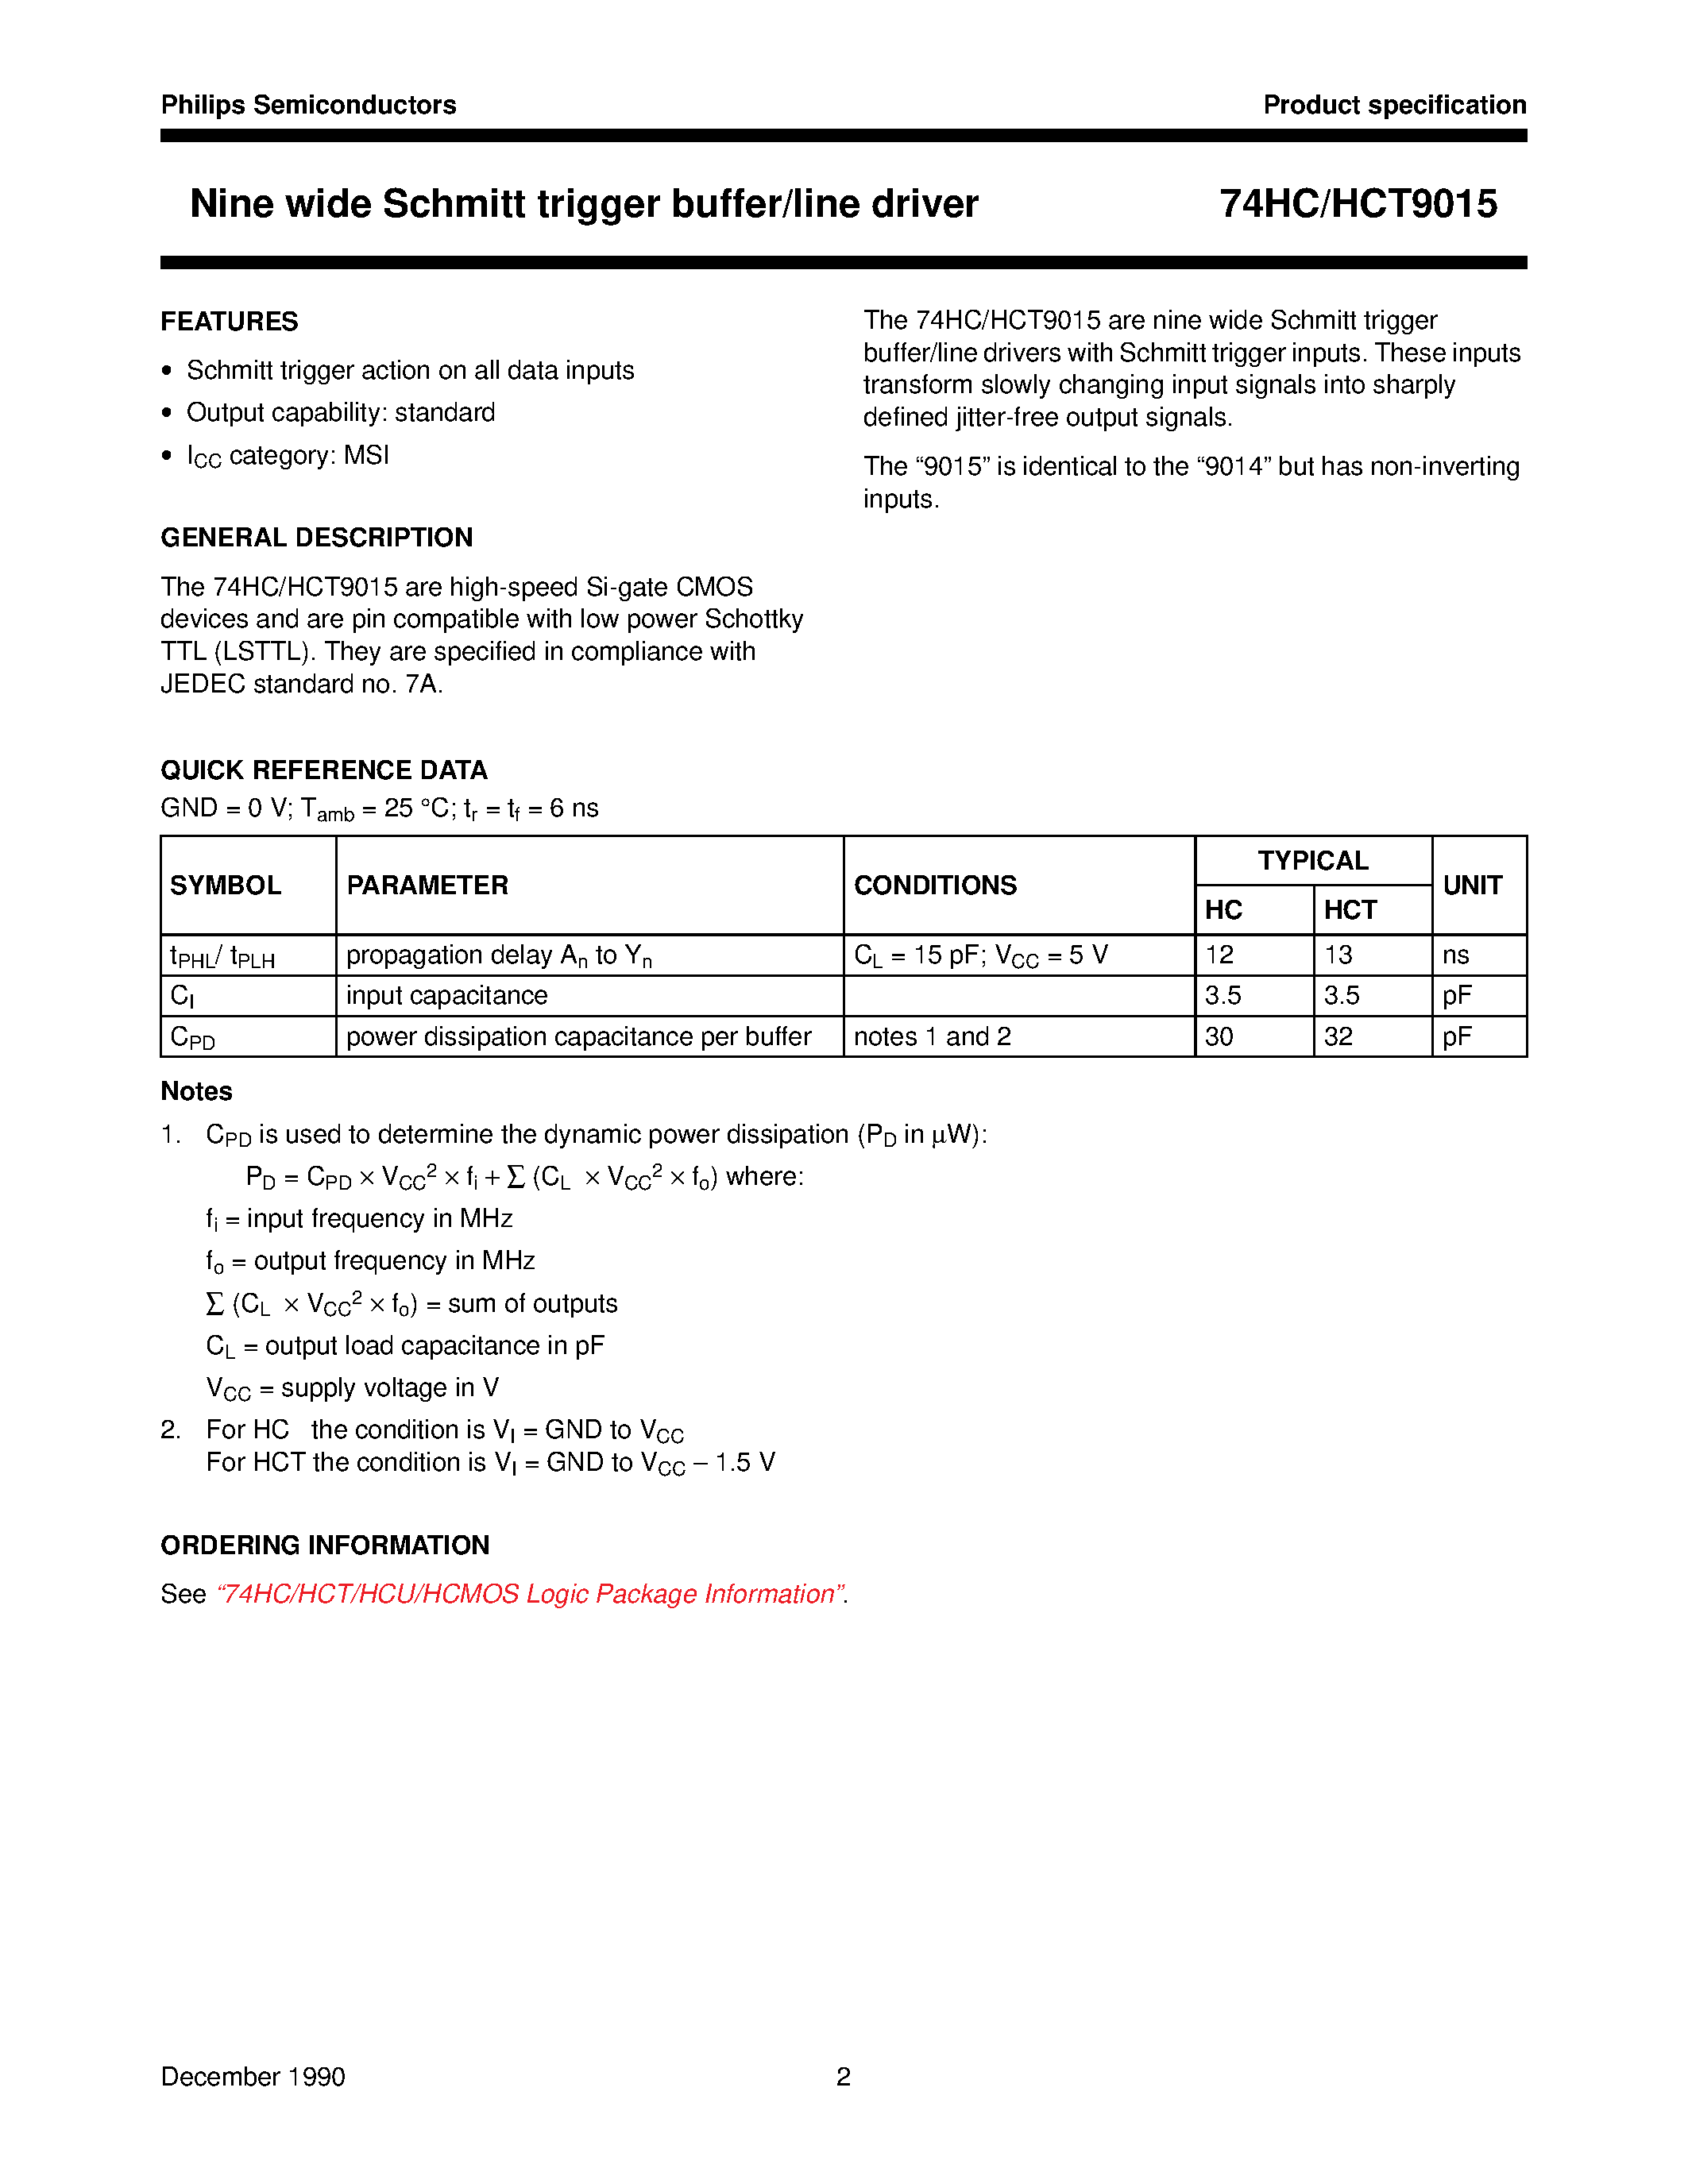 Datasheet 74HCT9015 - Nine wide Schmitt trigger buffer/line driver page 2